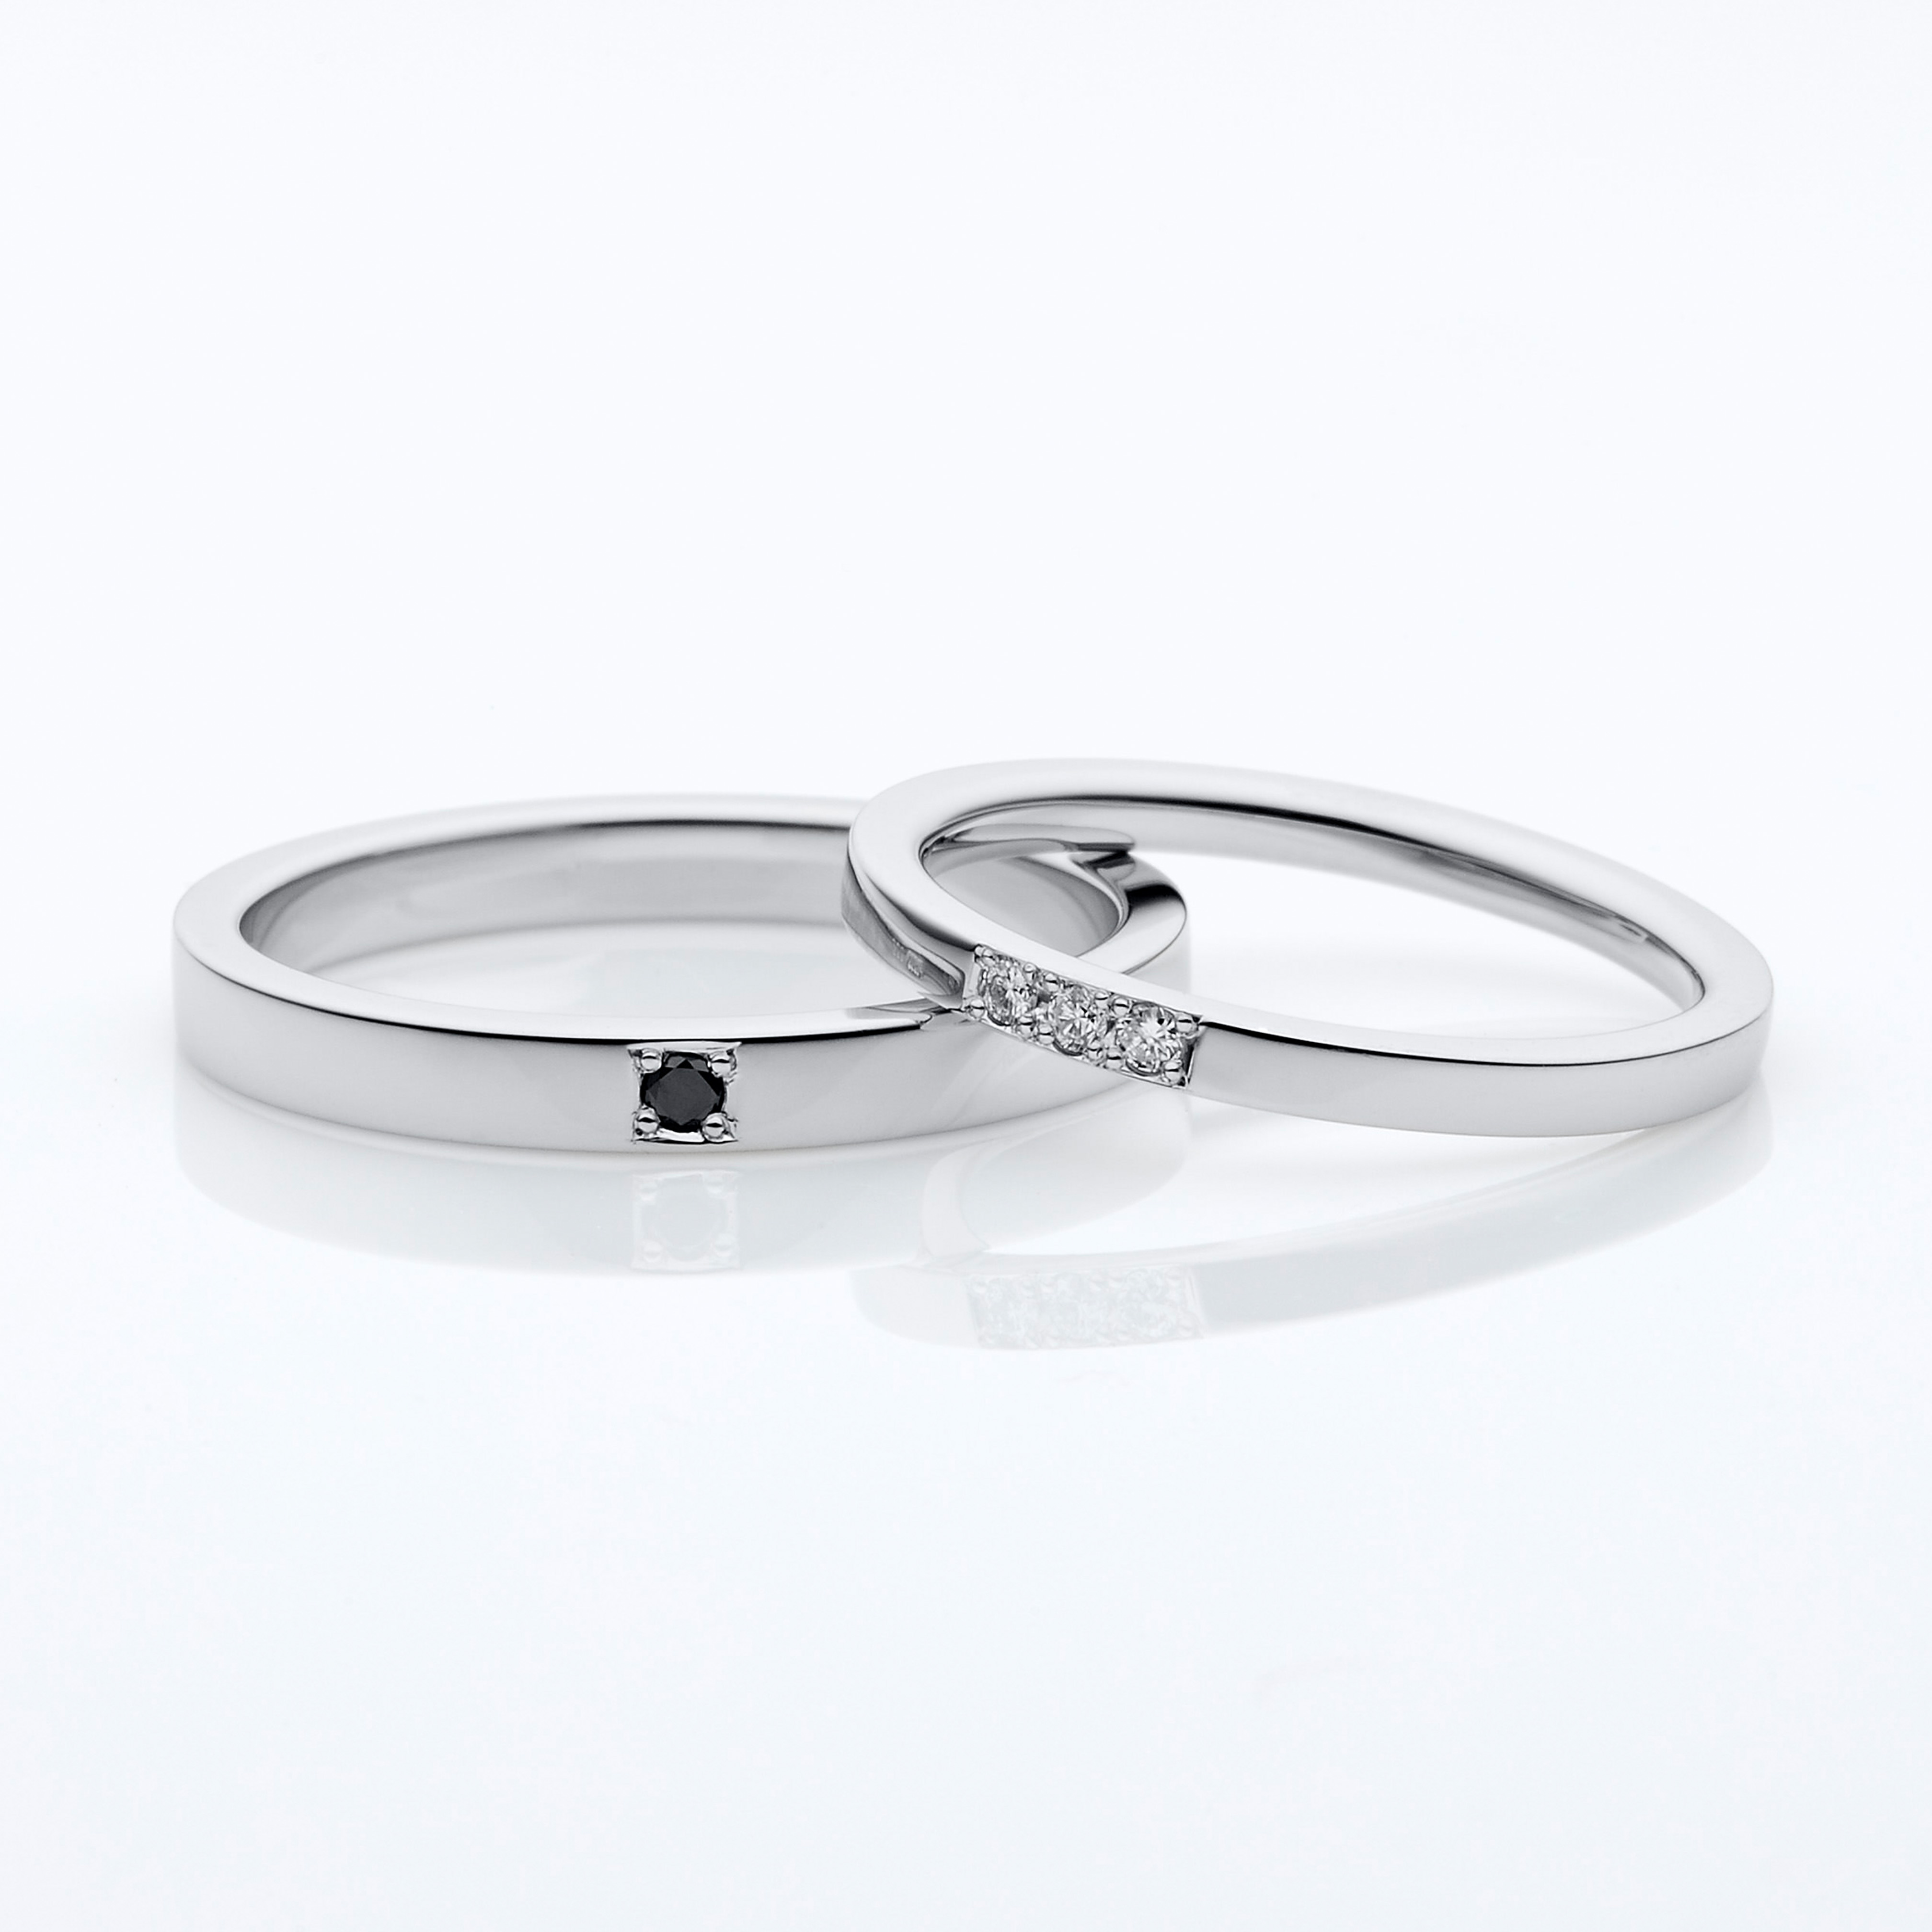 シンプルなデザインにそれぞれワンポイント留められたダイヤモンドがお洒落な結婚指輪です。